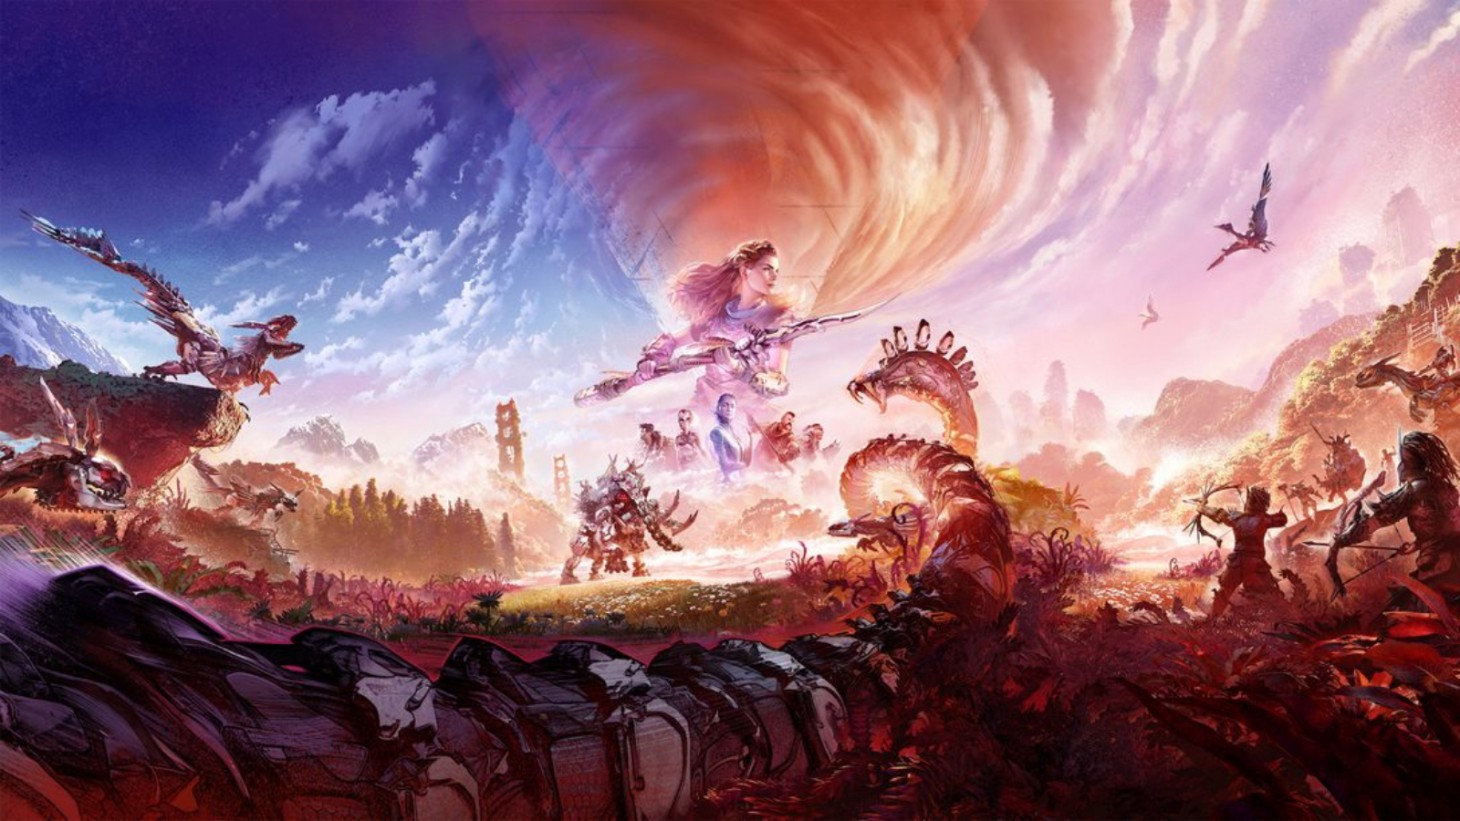 Tudo sobre Horizon Forbidden West: data de lançamento, gameplay e mais